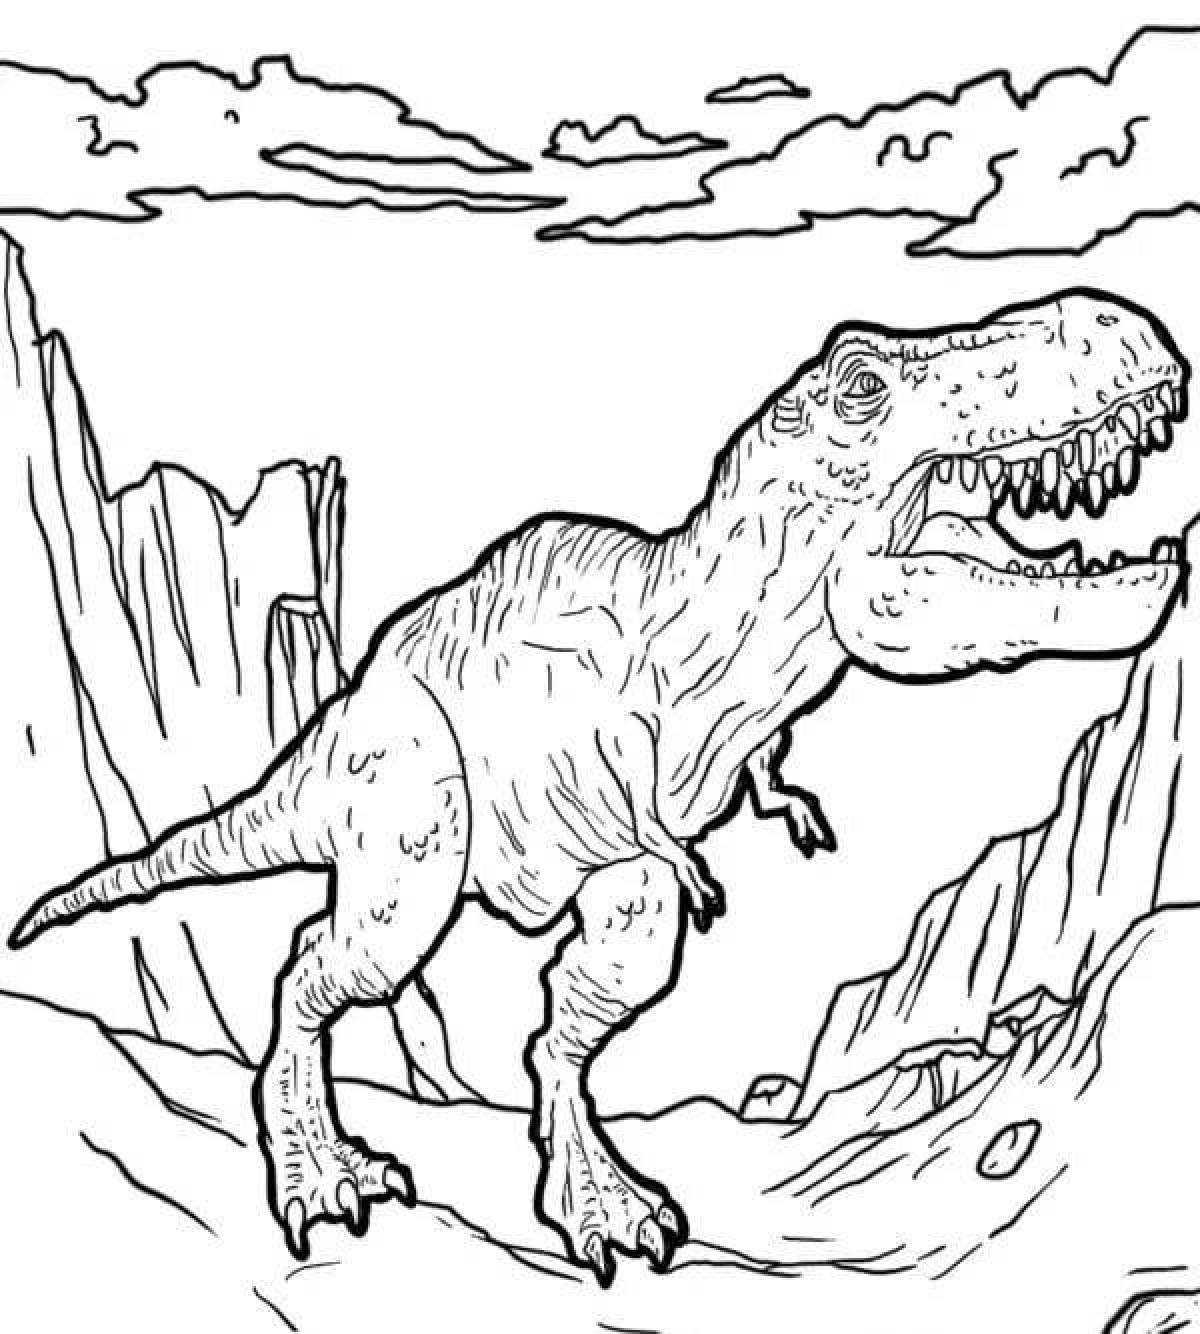 Charming coloring tarbosaurus forward